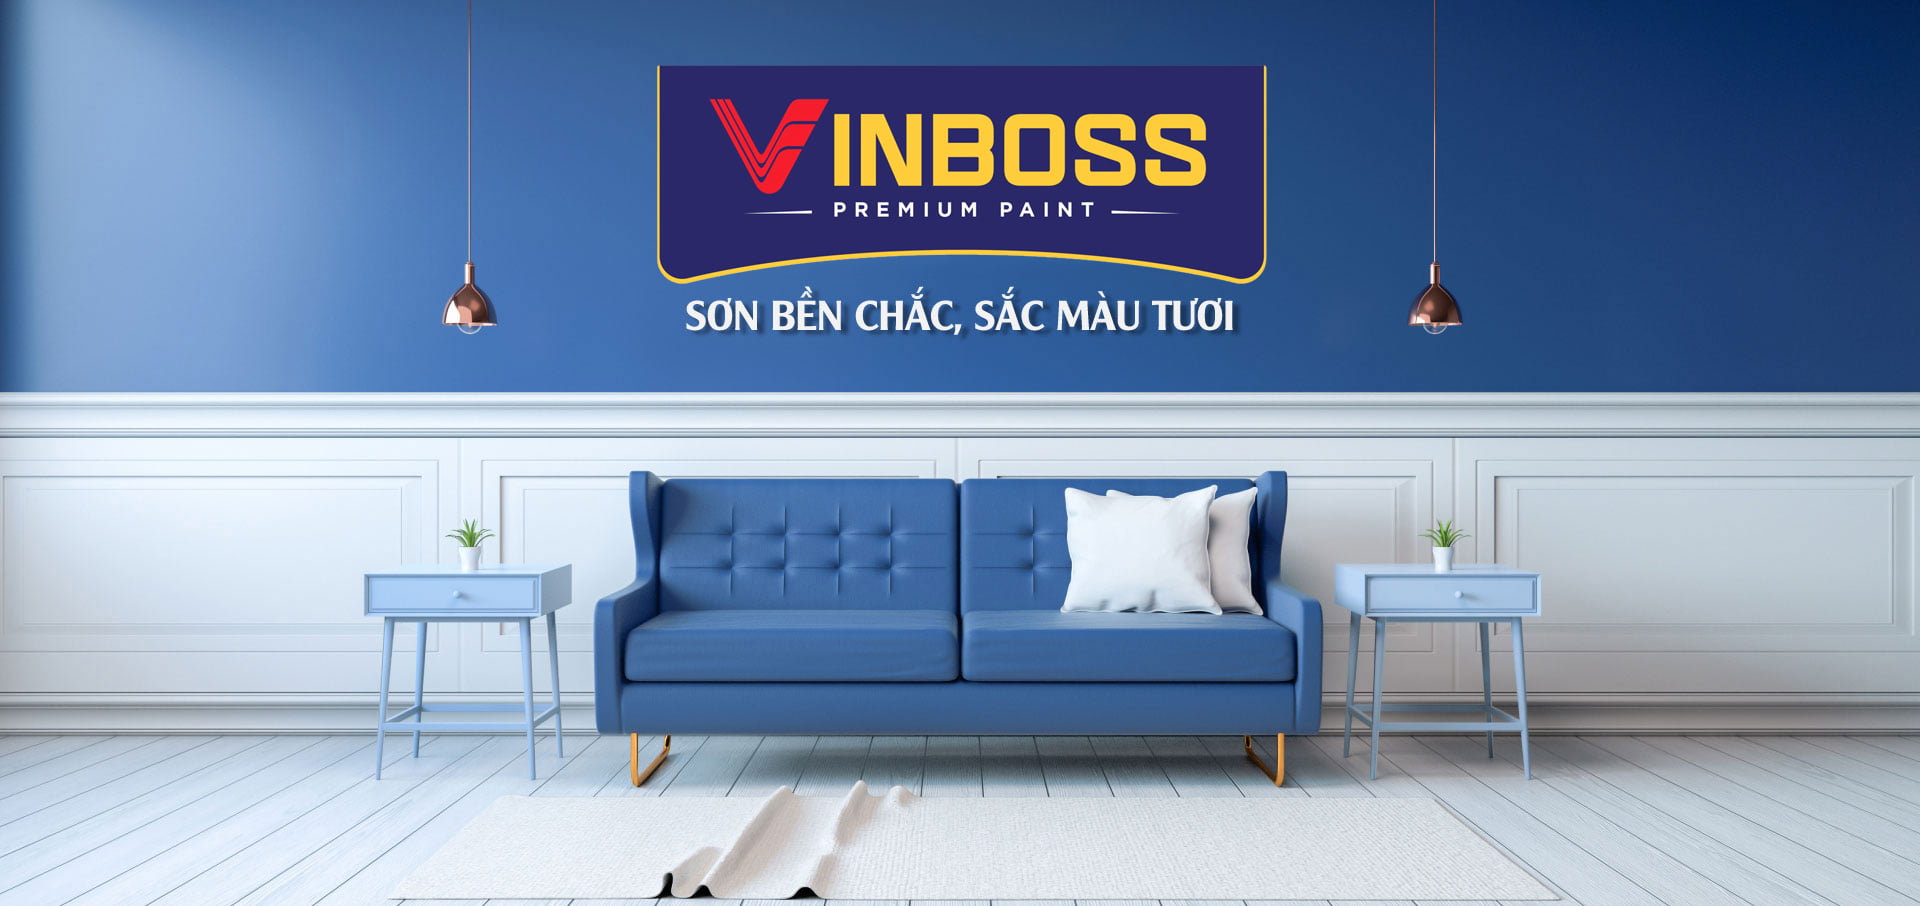 Sơn Vinboss